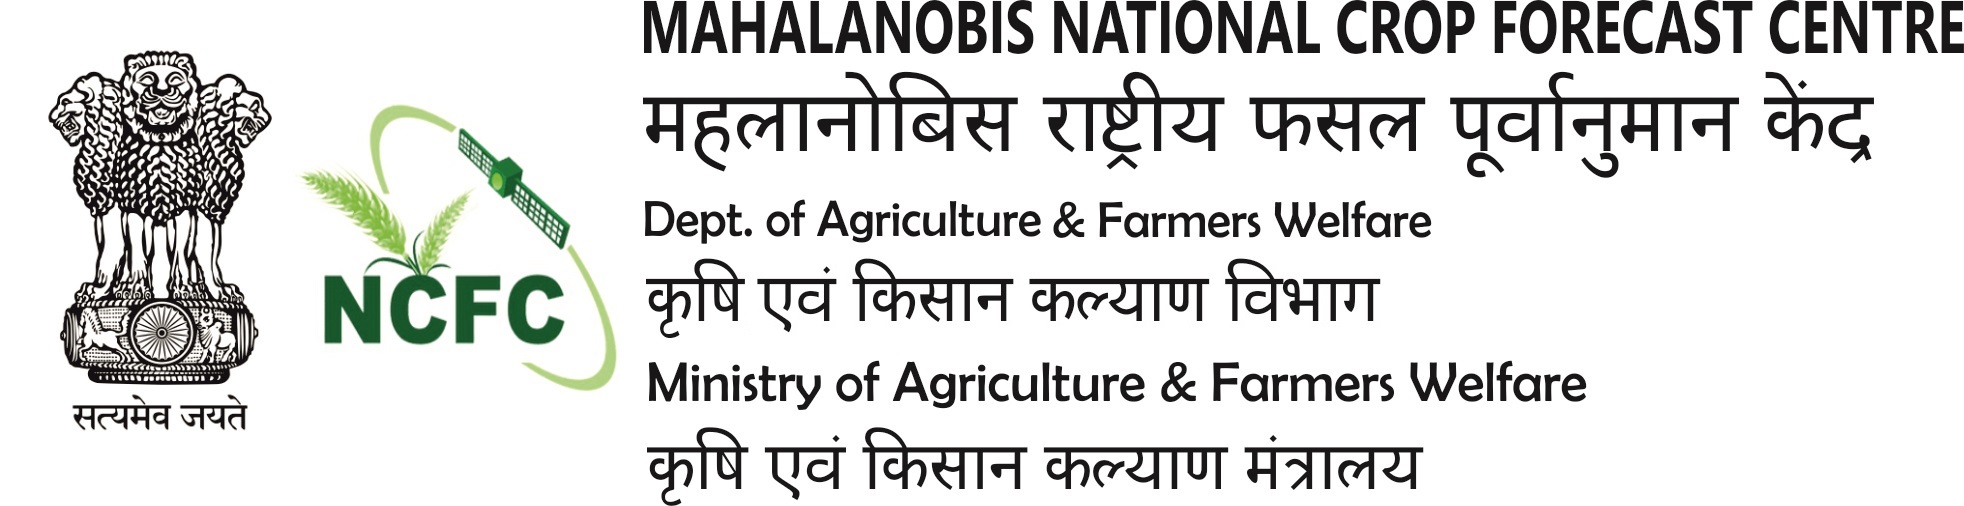 mahalanobis national crop forecast centre (mncfc) recruitment 2020